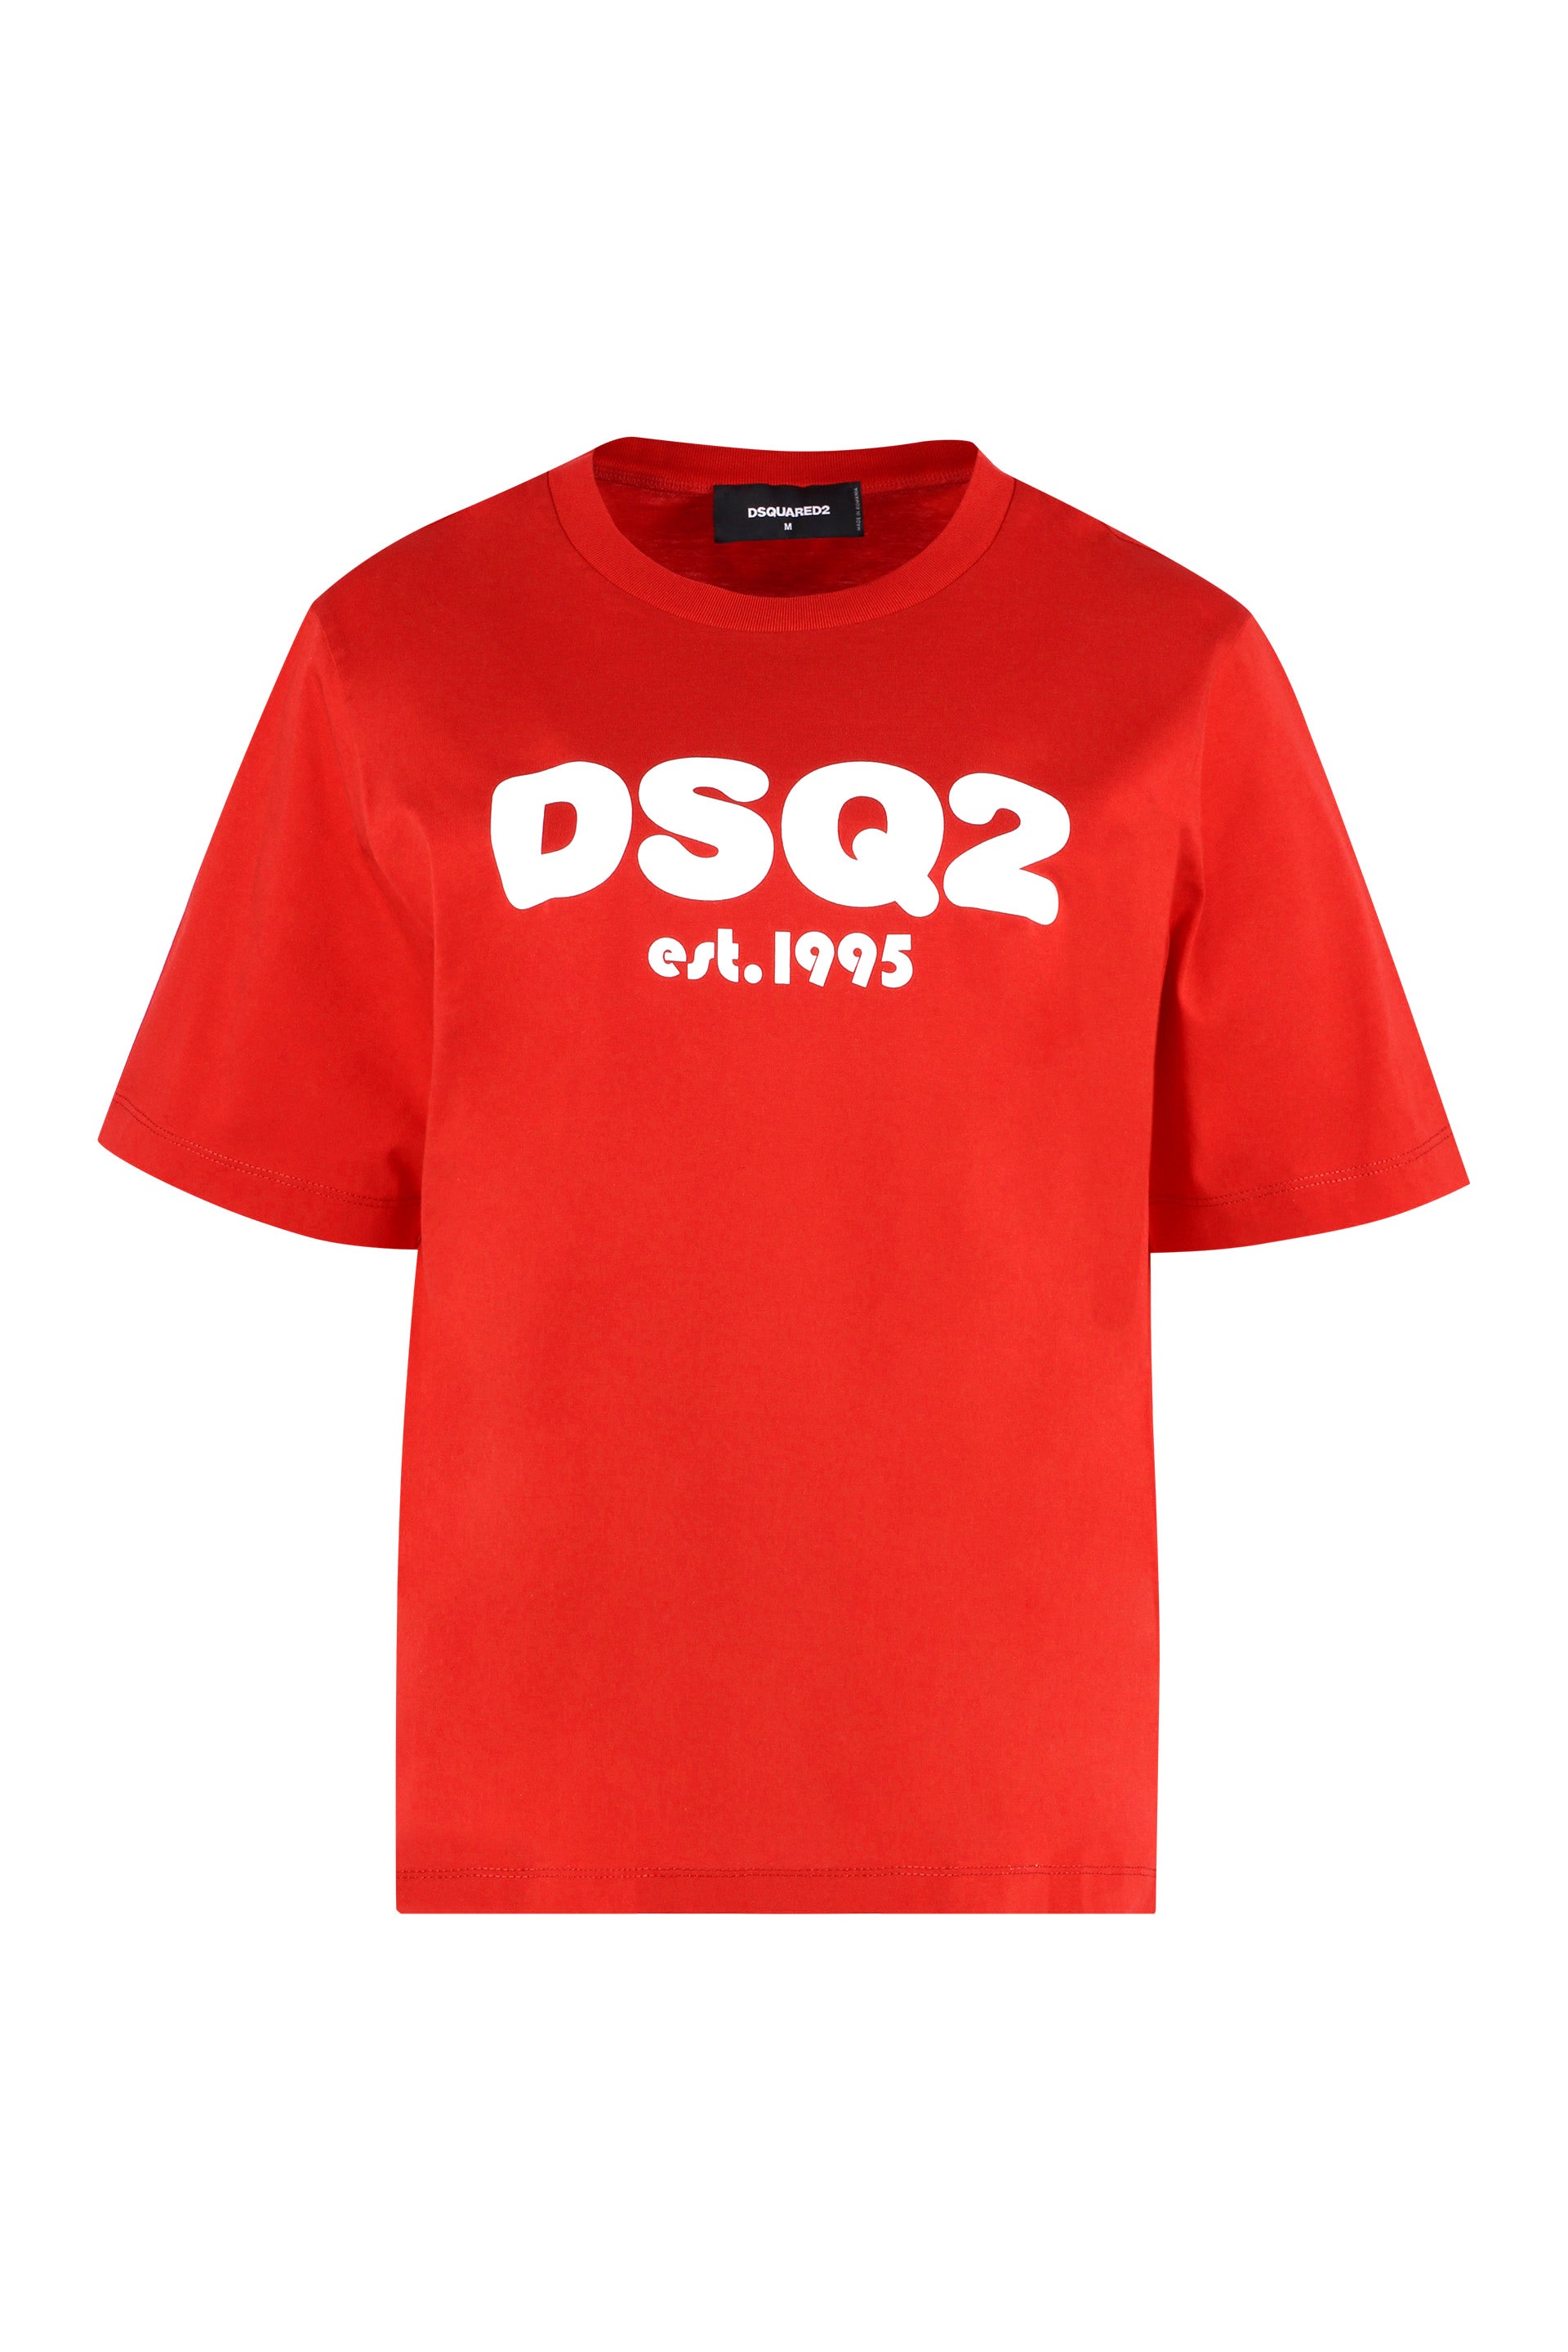 【銀座販売】DSQUARED2 SS23 ロゴTシャツ トップス